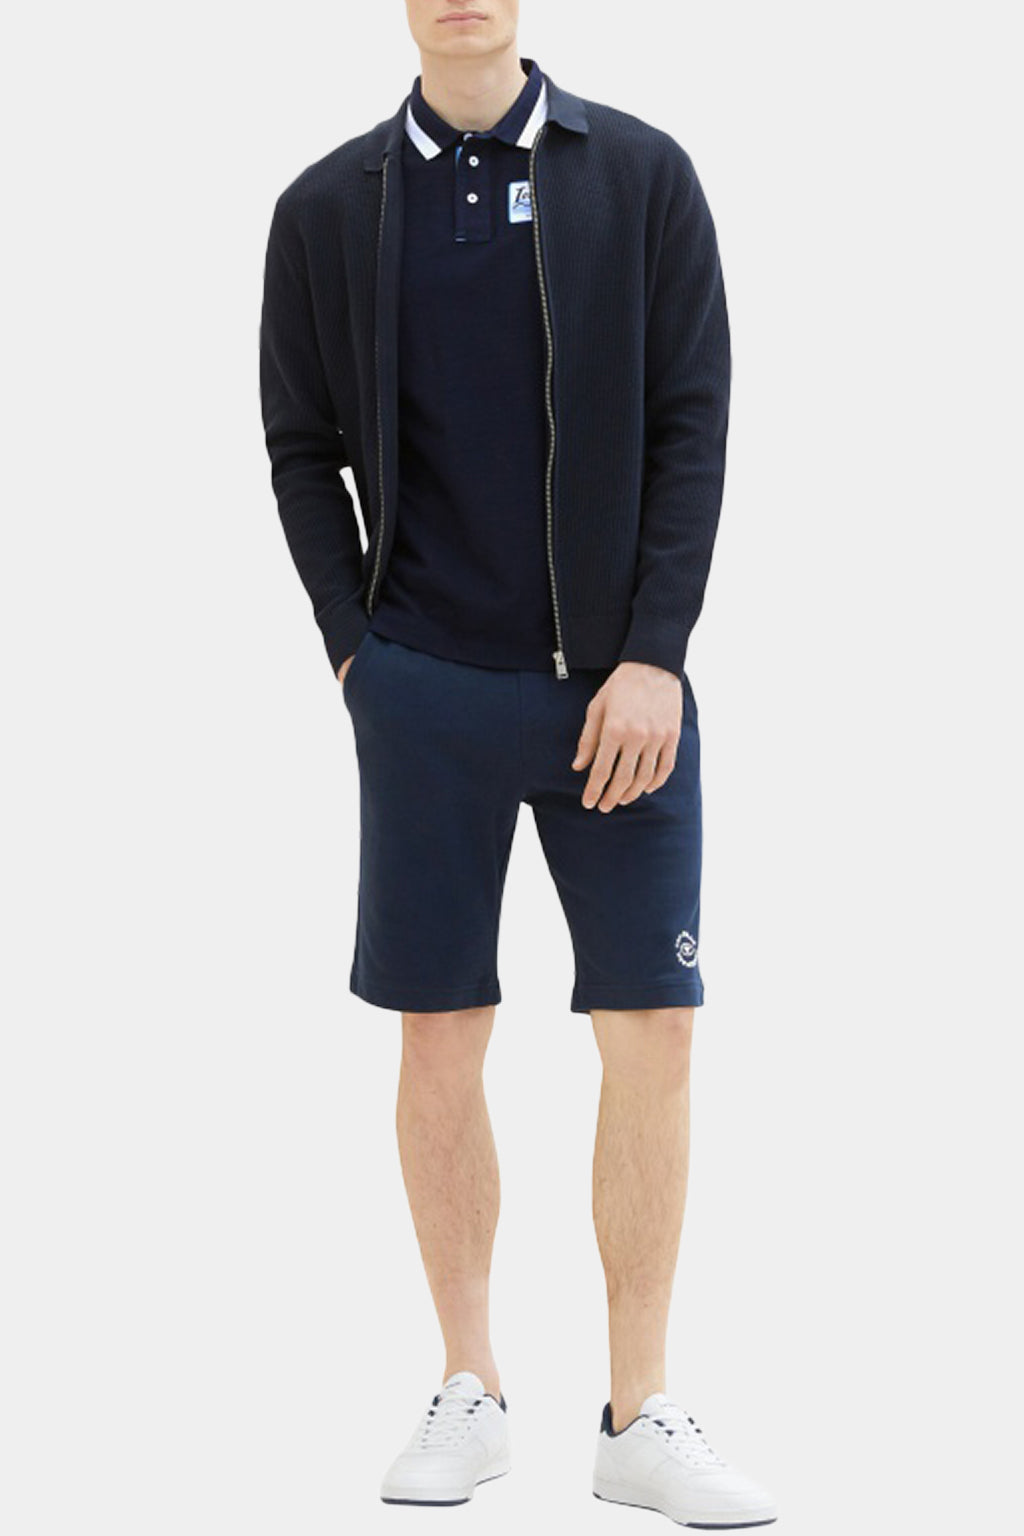 Tom Tailor - Bermuda Sweatpants Shorts